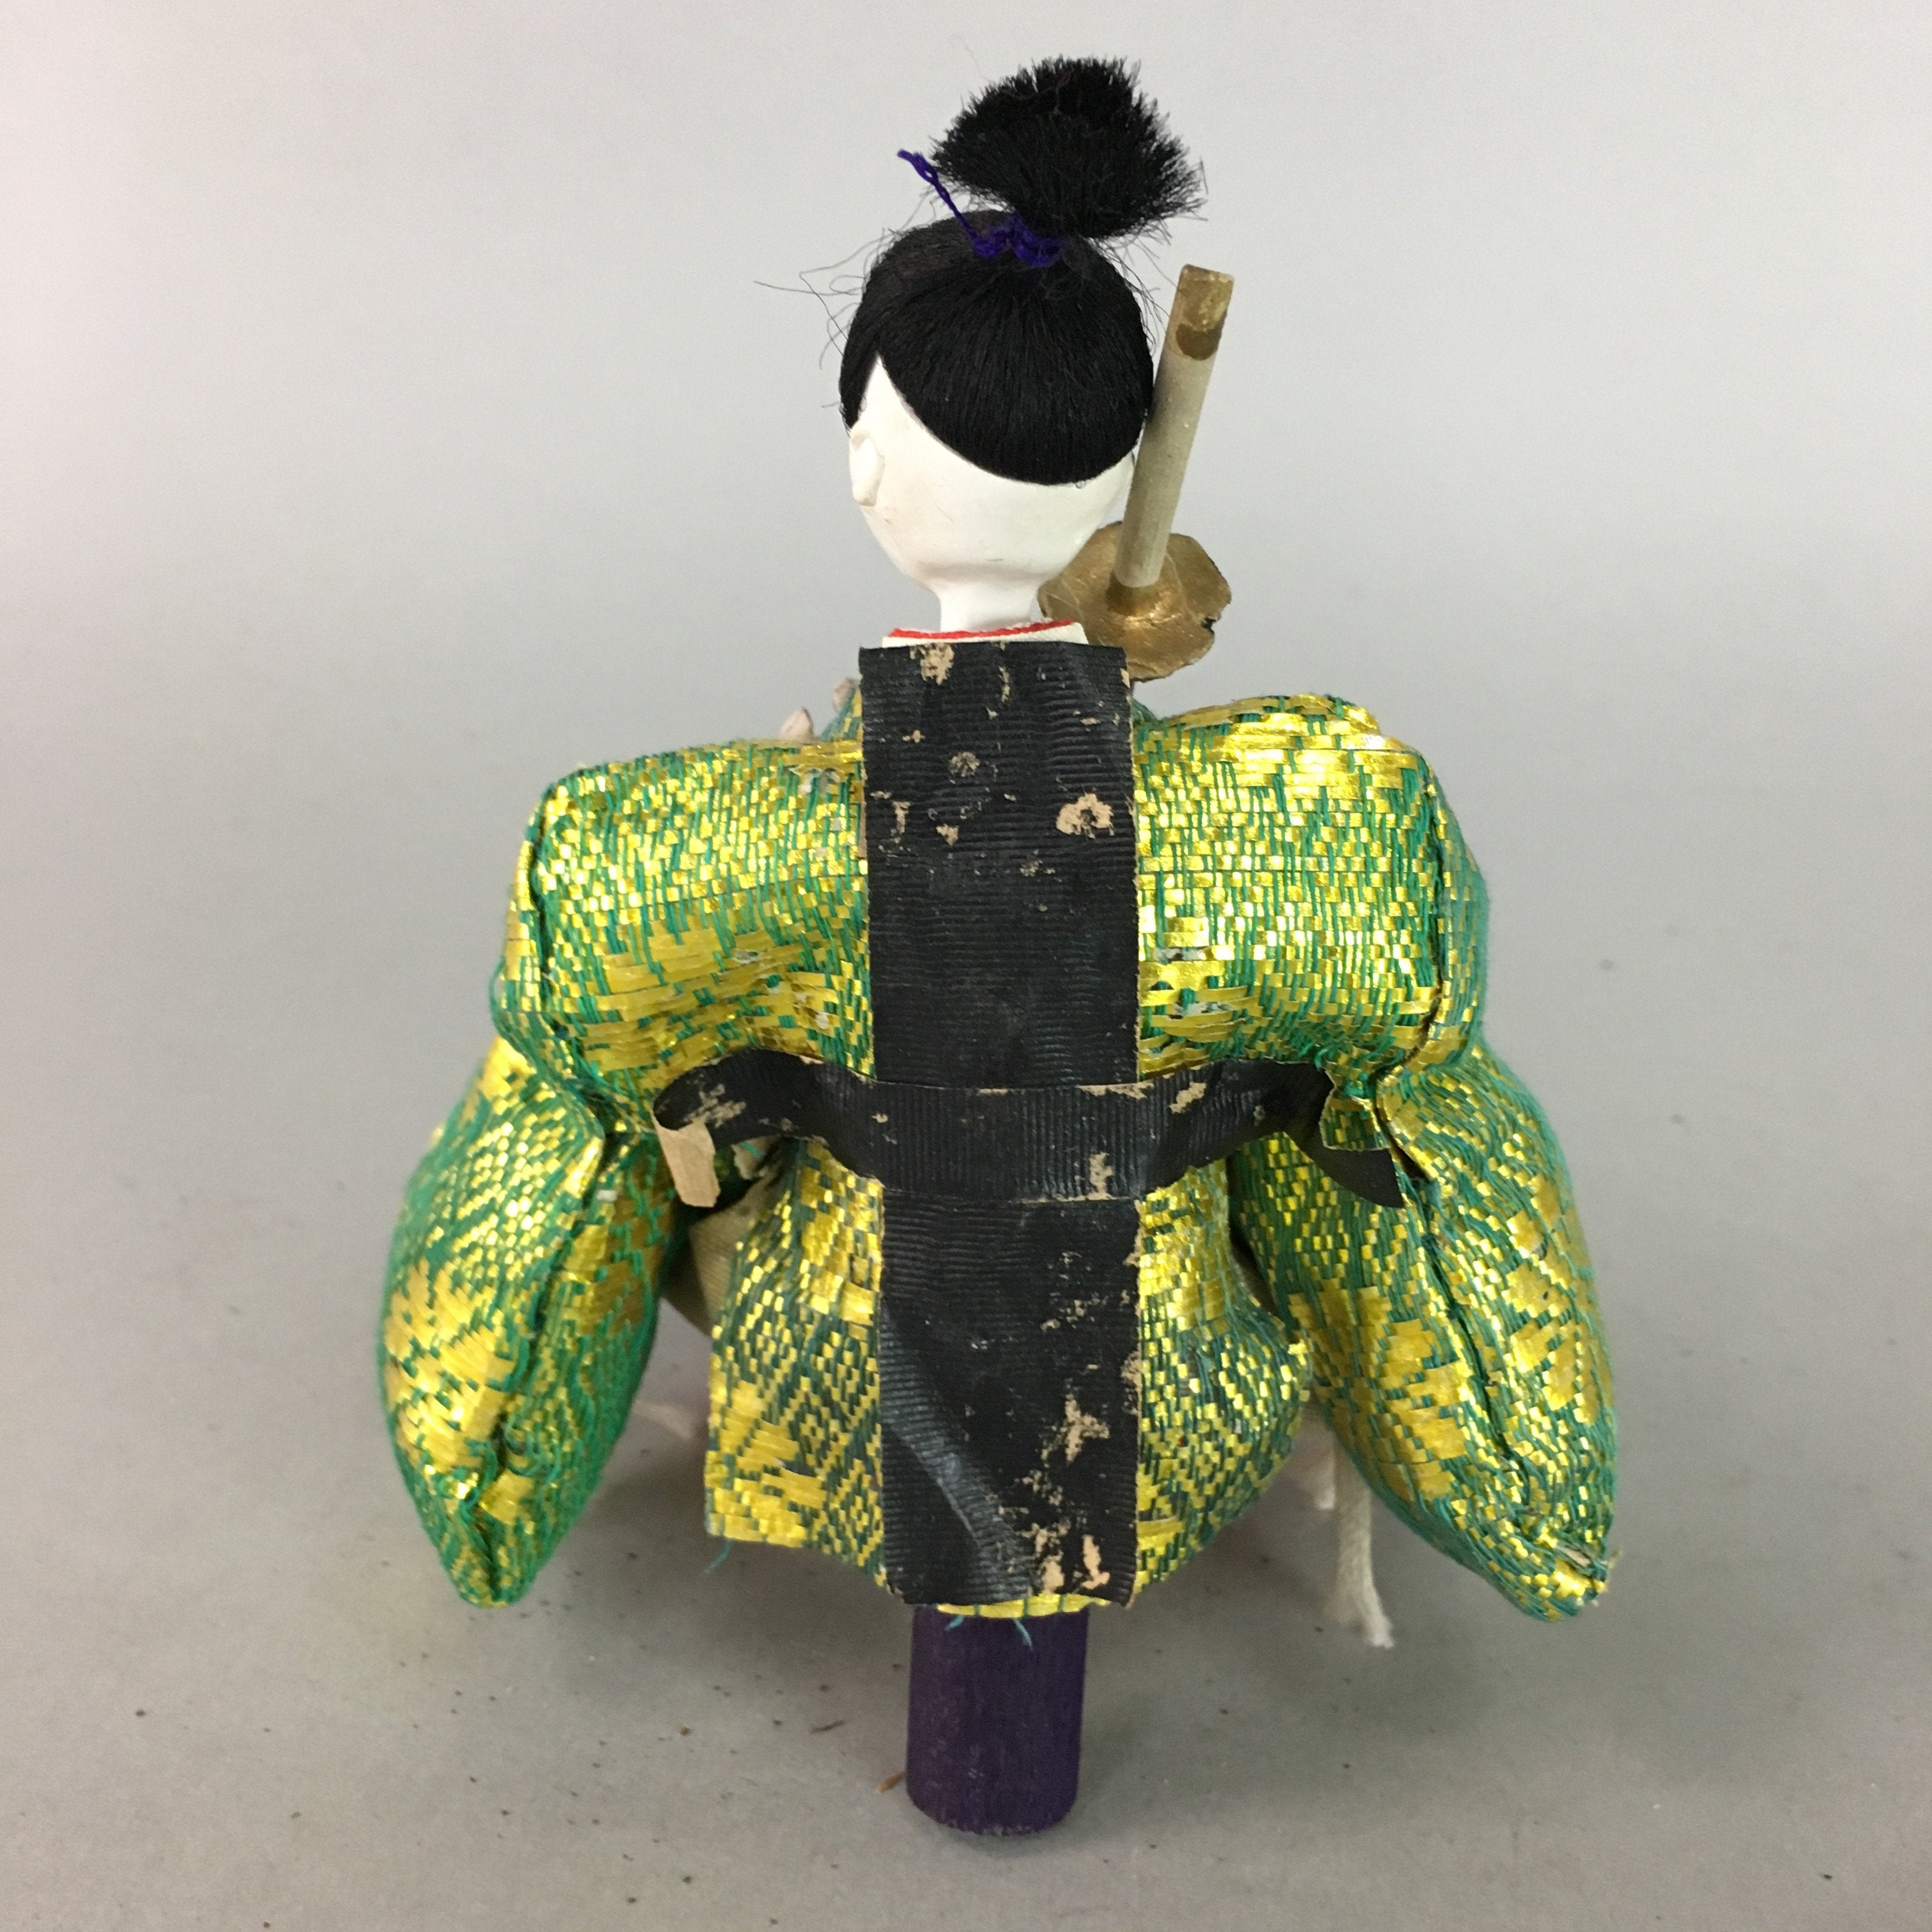 Japanese Hina Doll Guard Samurai Vtg Girls Day Decor Kimono Man ID249